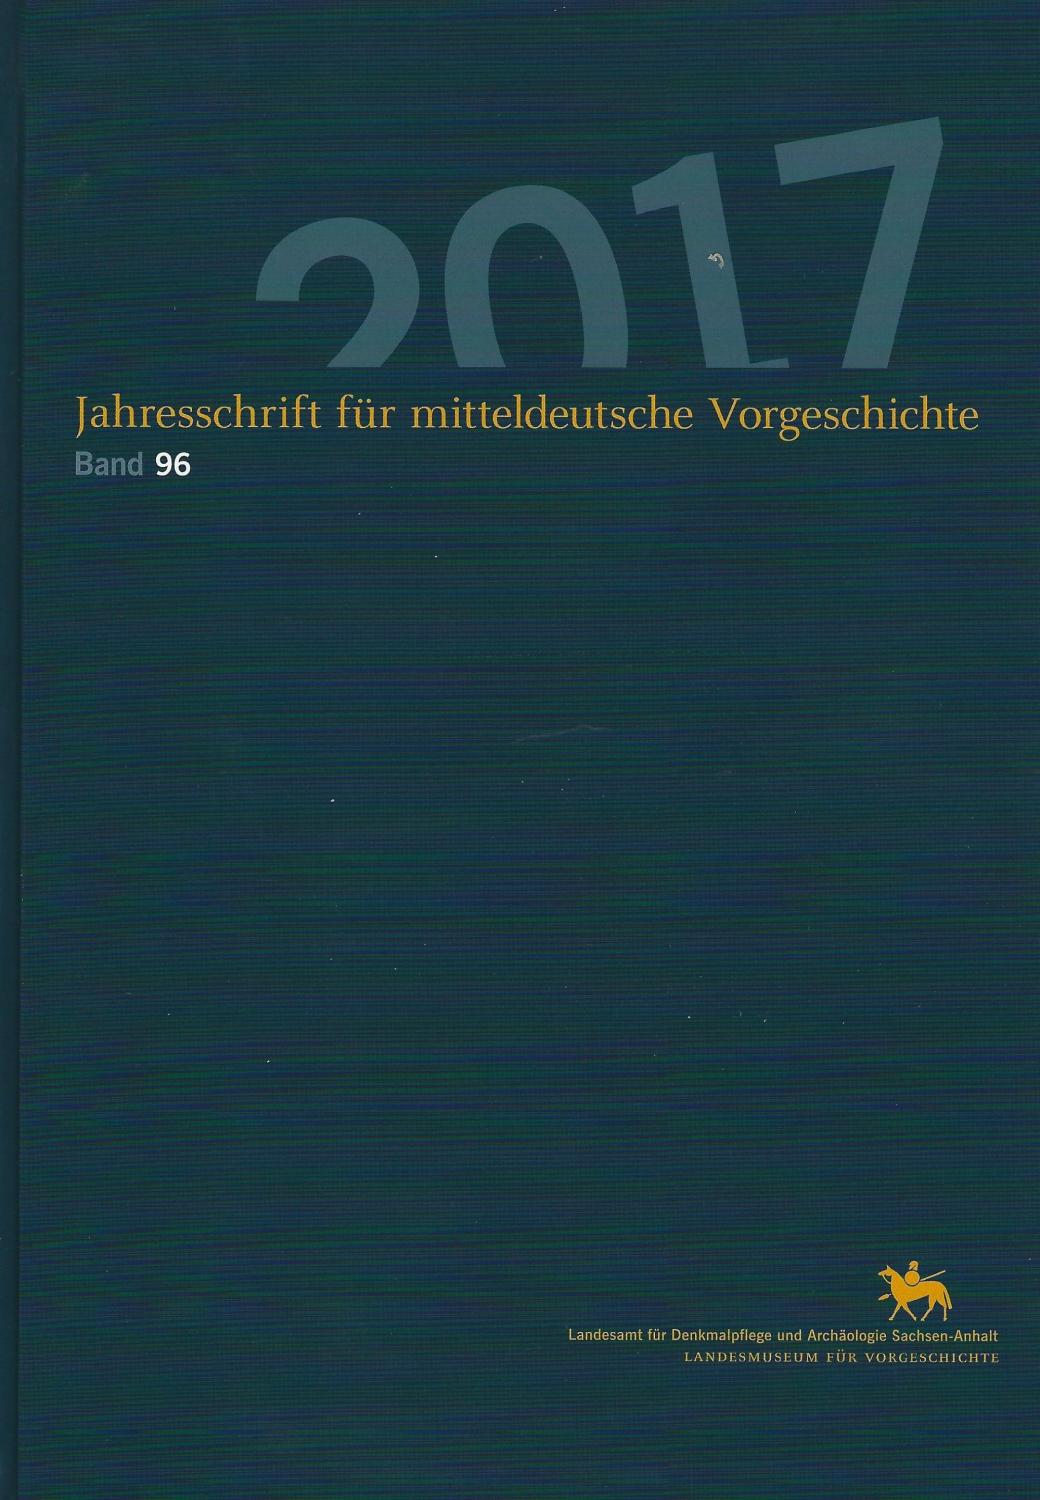 Jahresschrift für mitteldeutsche Vorgeschichte / Jahreschrift für Mitteldeutsche Vorgeschichte: Band 96